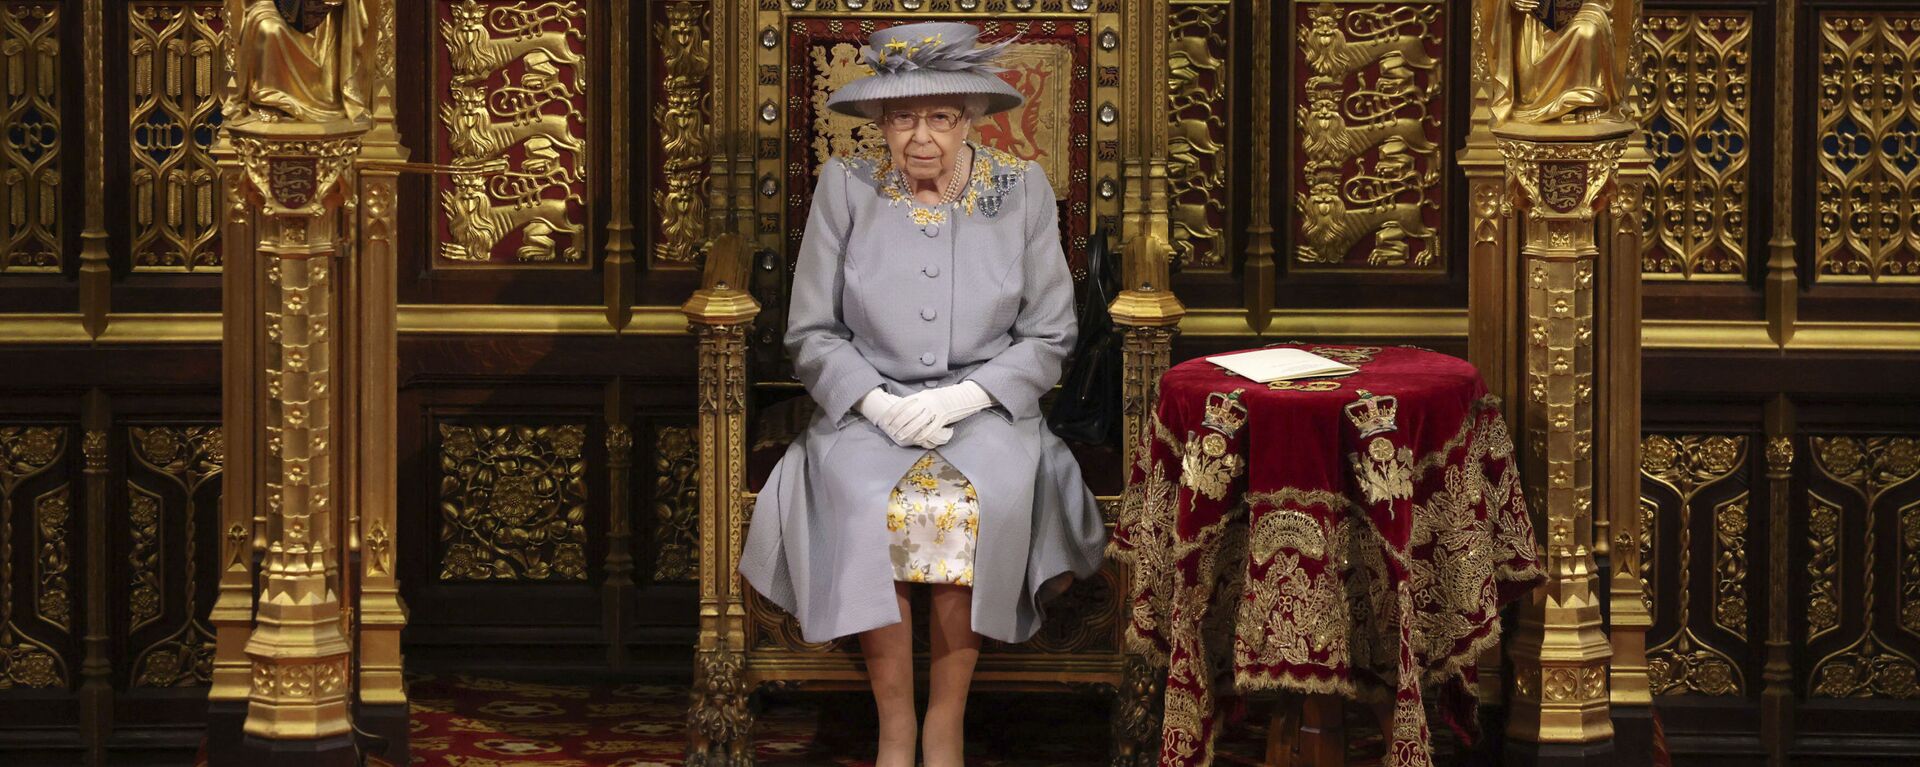 Nữ hoàng Elizabeth II của Vương quốc Anh có bài phát biểu trước Viện Quý tộc tại Điện Westminster ở London - Sputnik Việt Nam, 1920, 04.09.2021